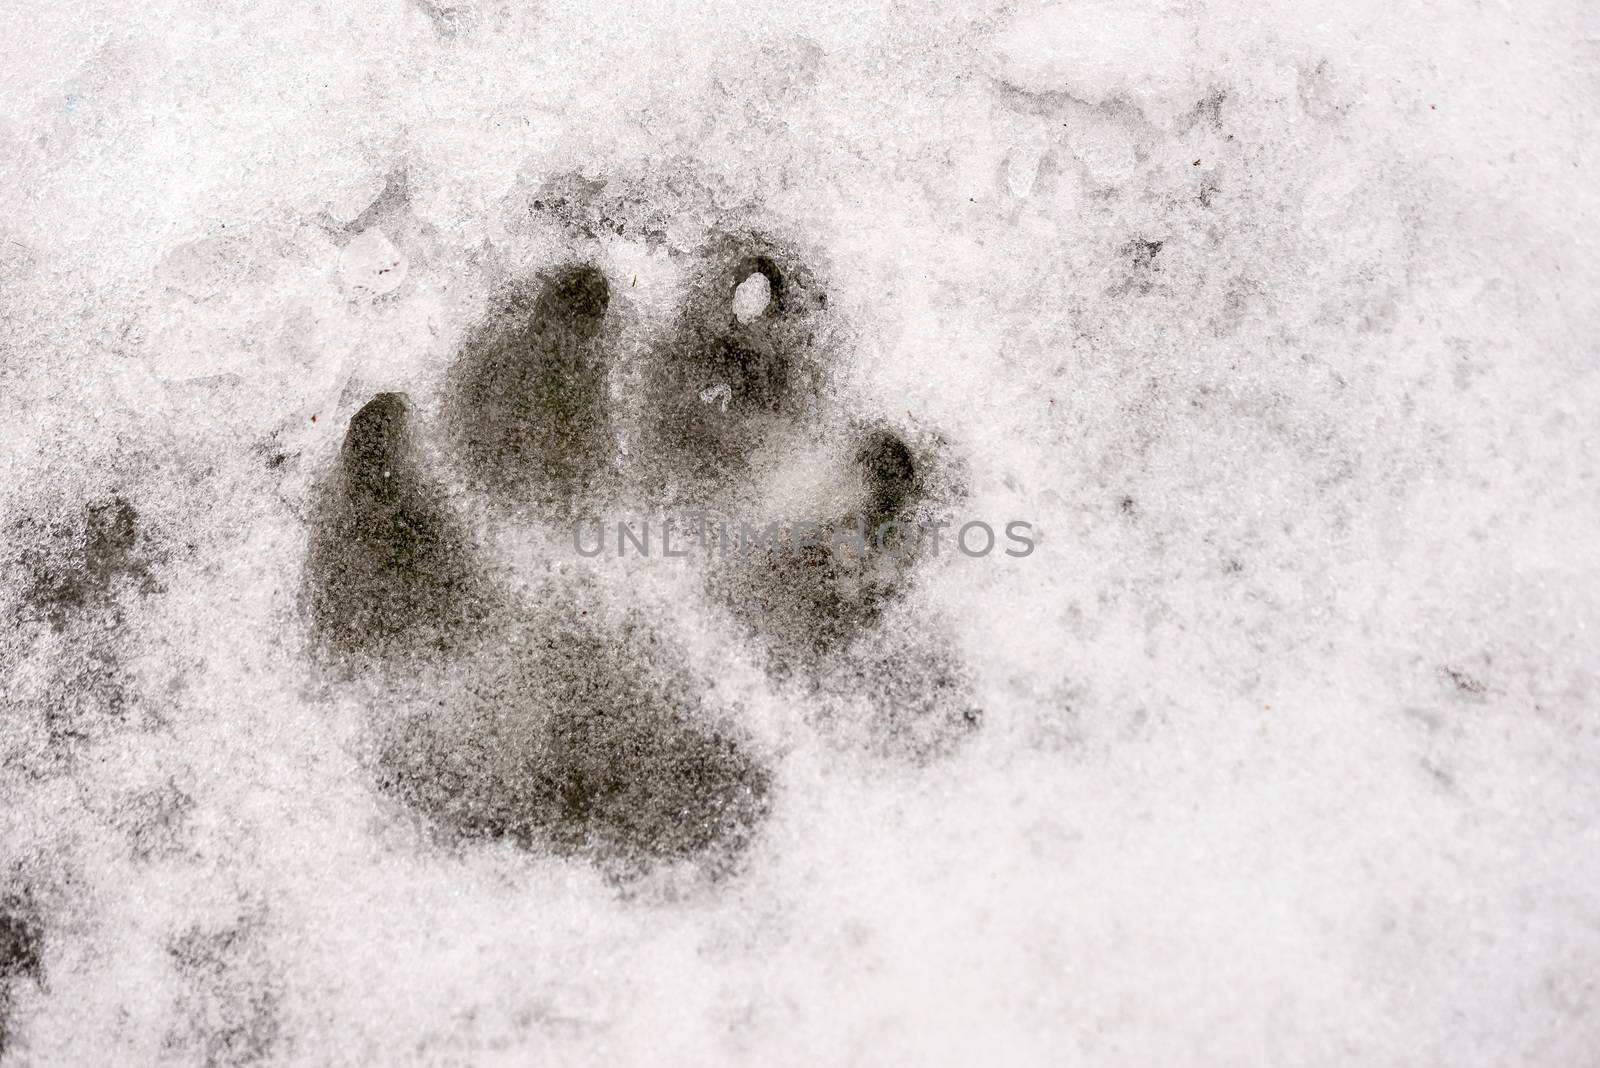 Animal Print on the Snow by MaxalTamor